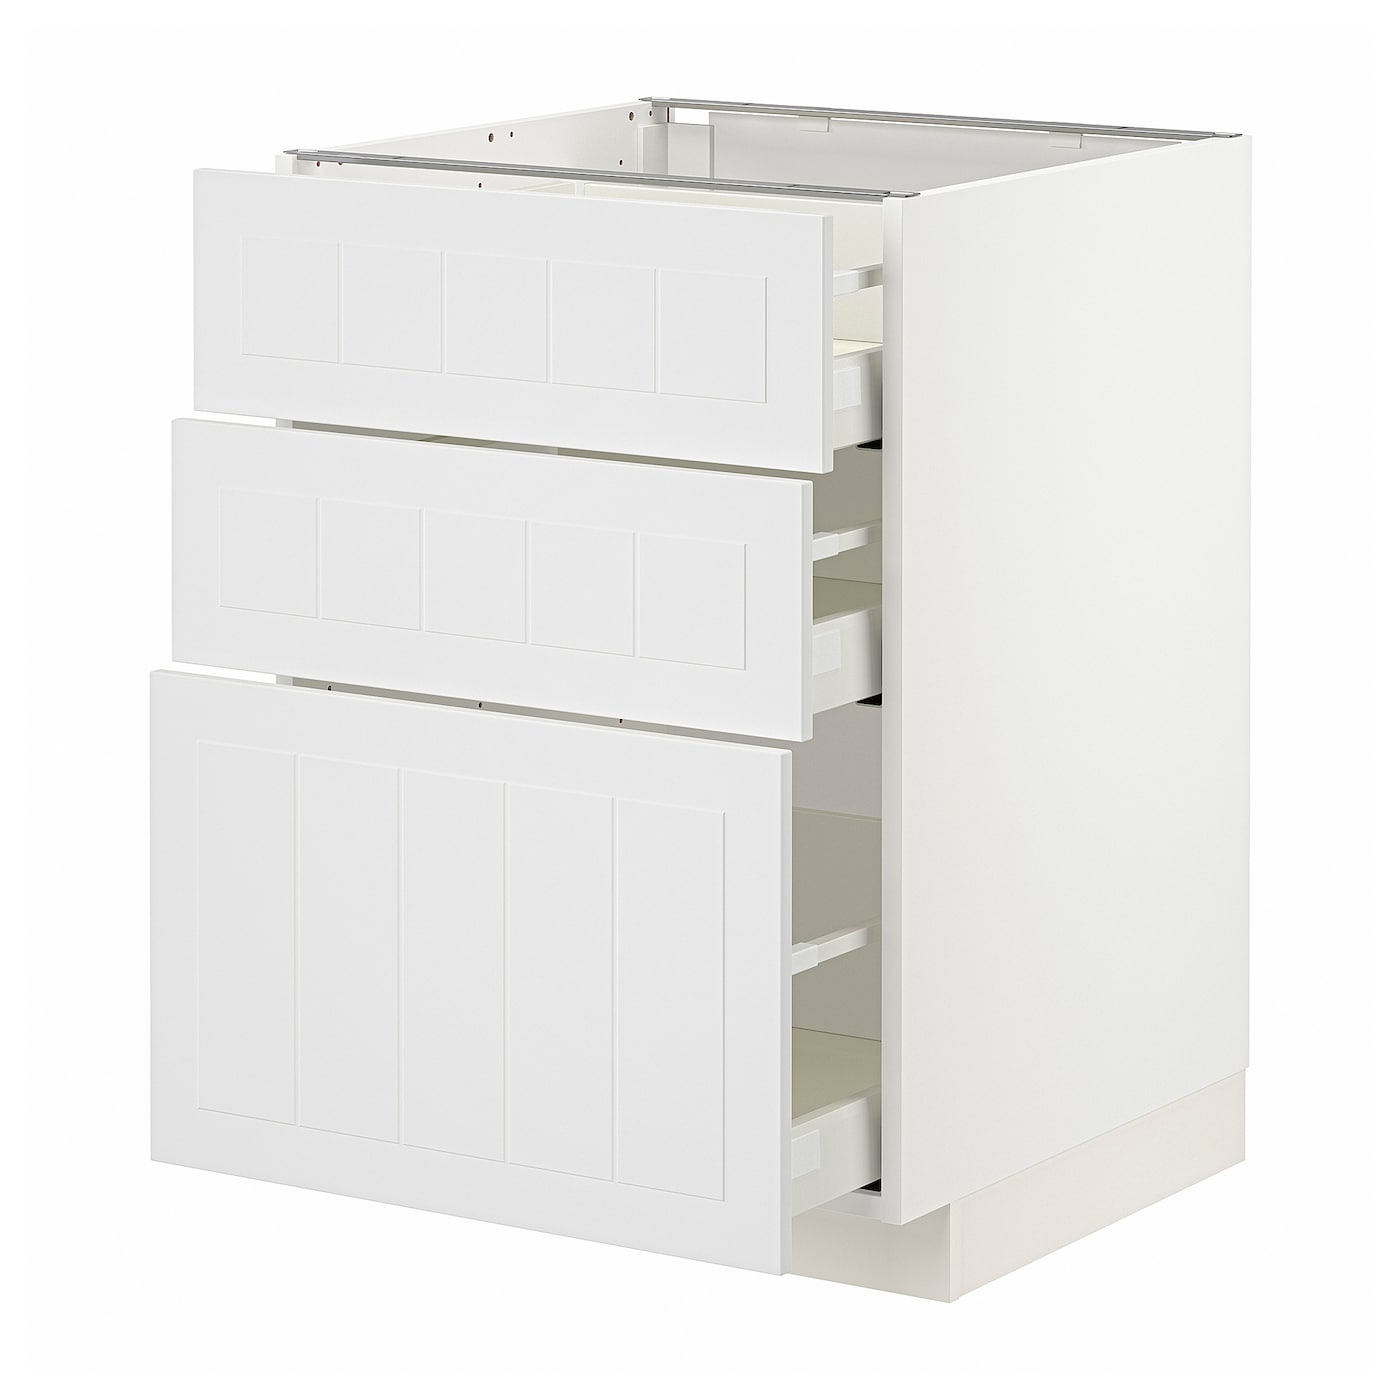 Напольный шкаф - METOD / MAXIMERA IKEA/ МЕТОД/ МАКСИМЕРА ИКЕА,  88х60 см, белый